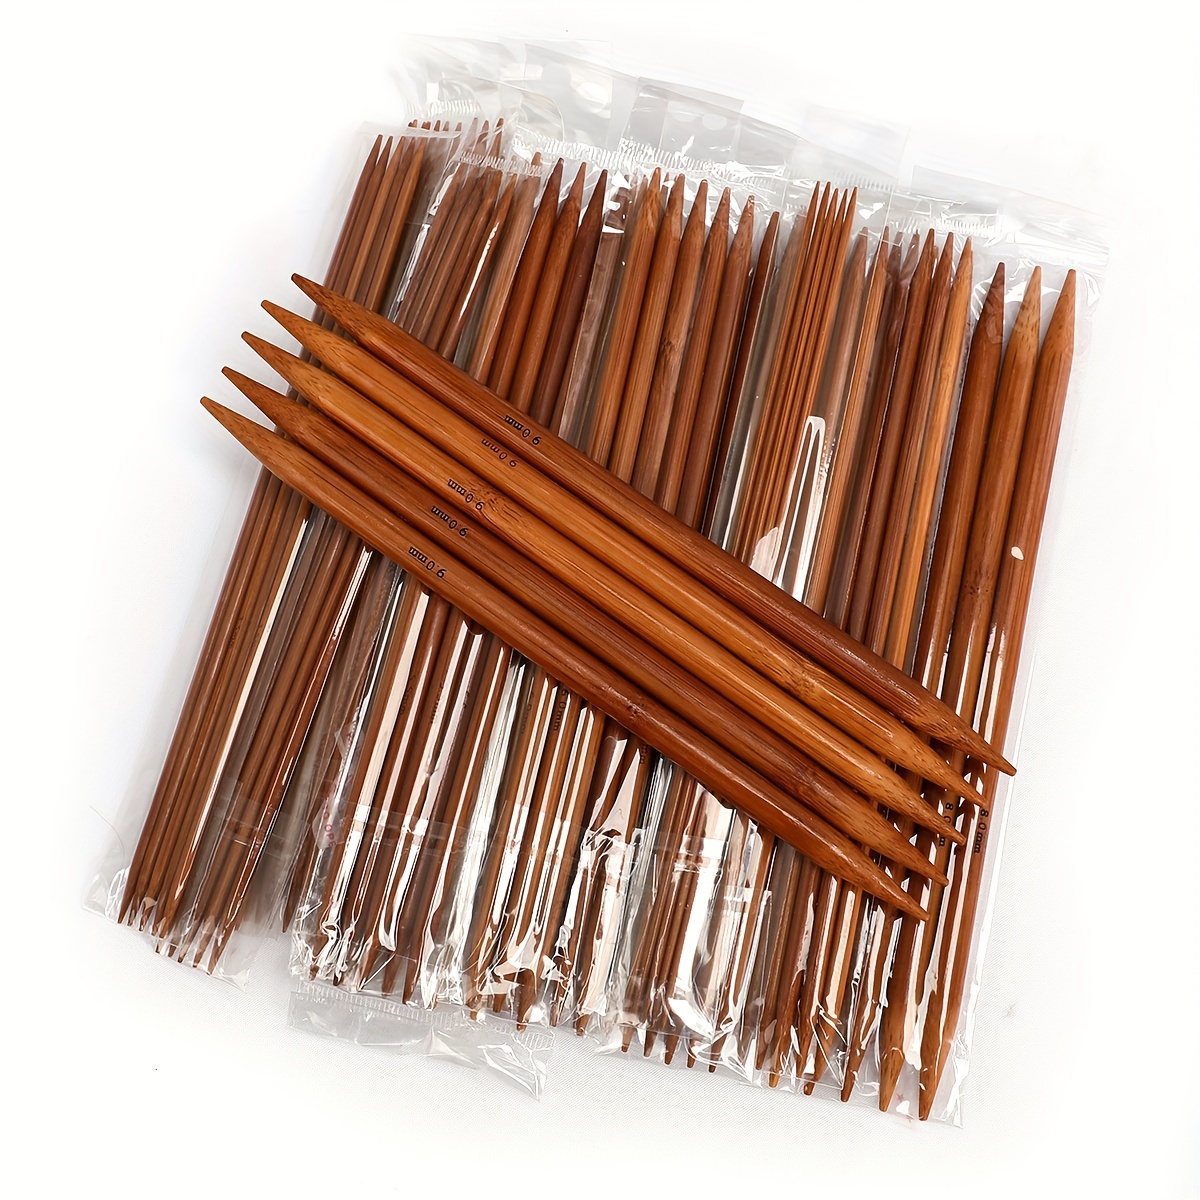  36PCS Bamboo Knitting Needles Set, BetyBedy Single